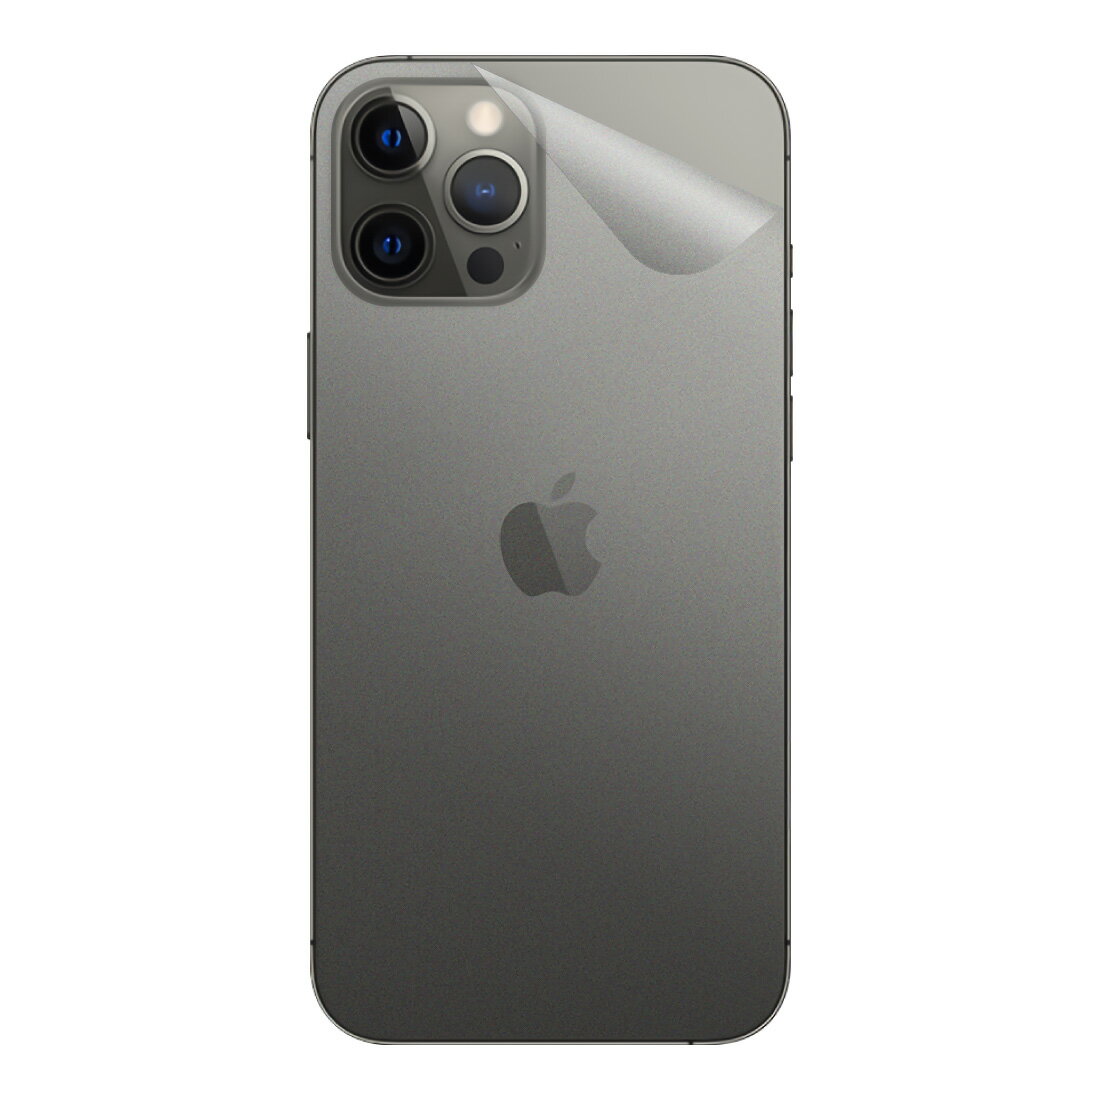 スキンシール iPhone 12 Pro Max 【透明・すりガラス調】 日本製 自社製造直販